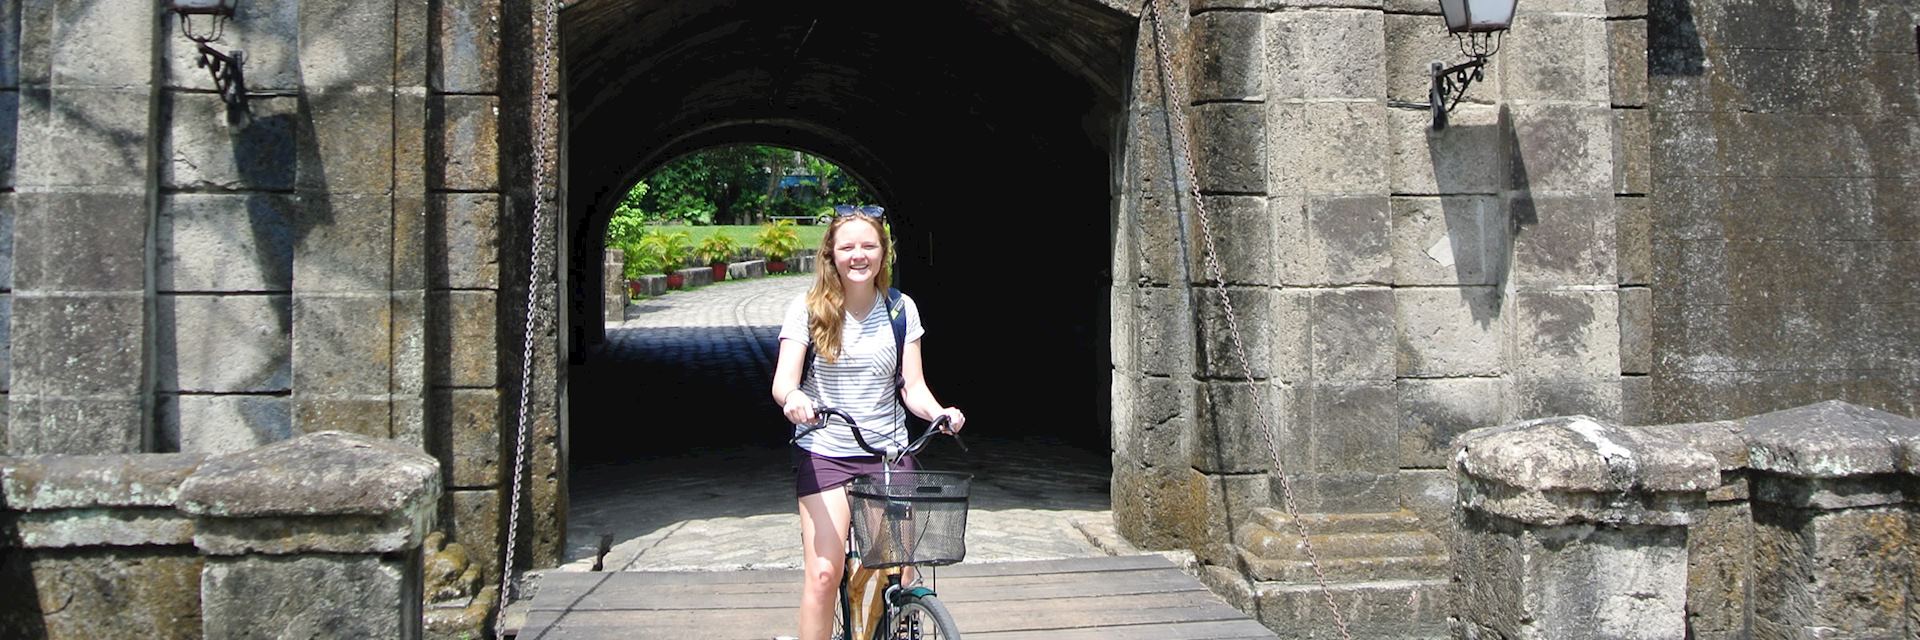 Isabel riding through Intramuros, Manila